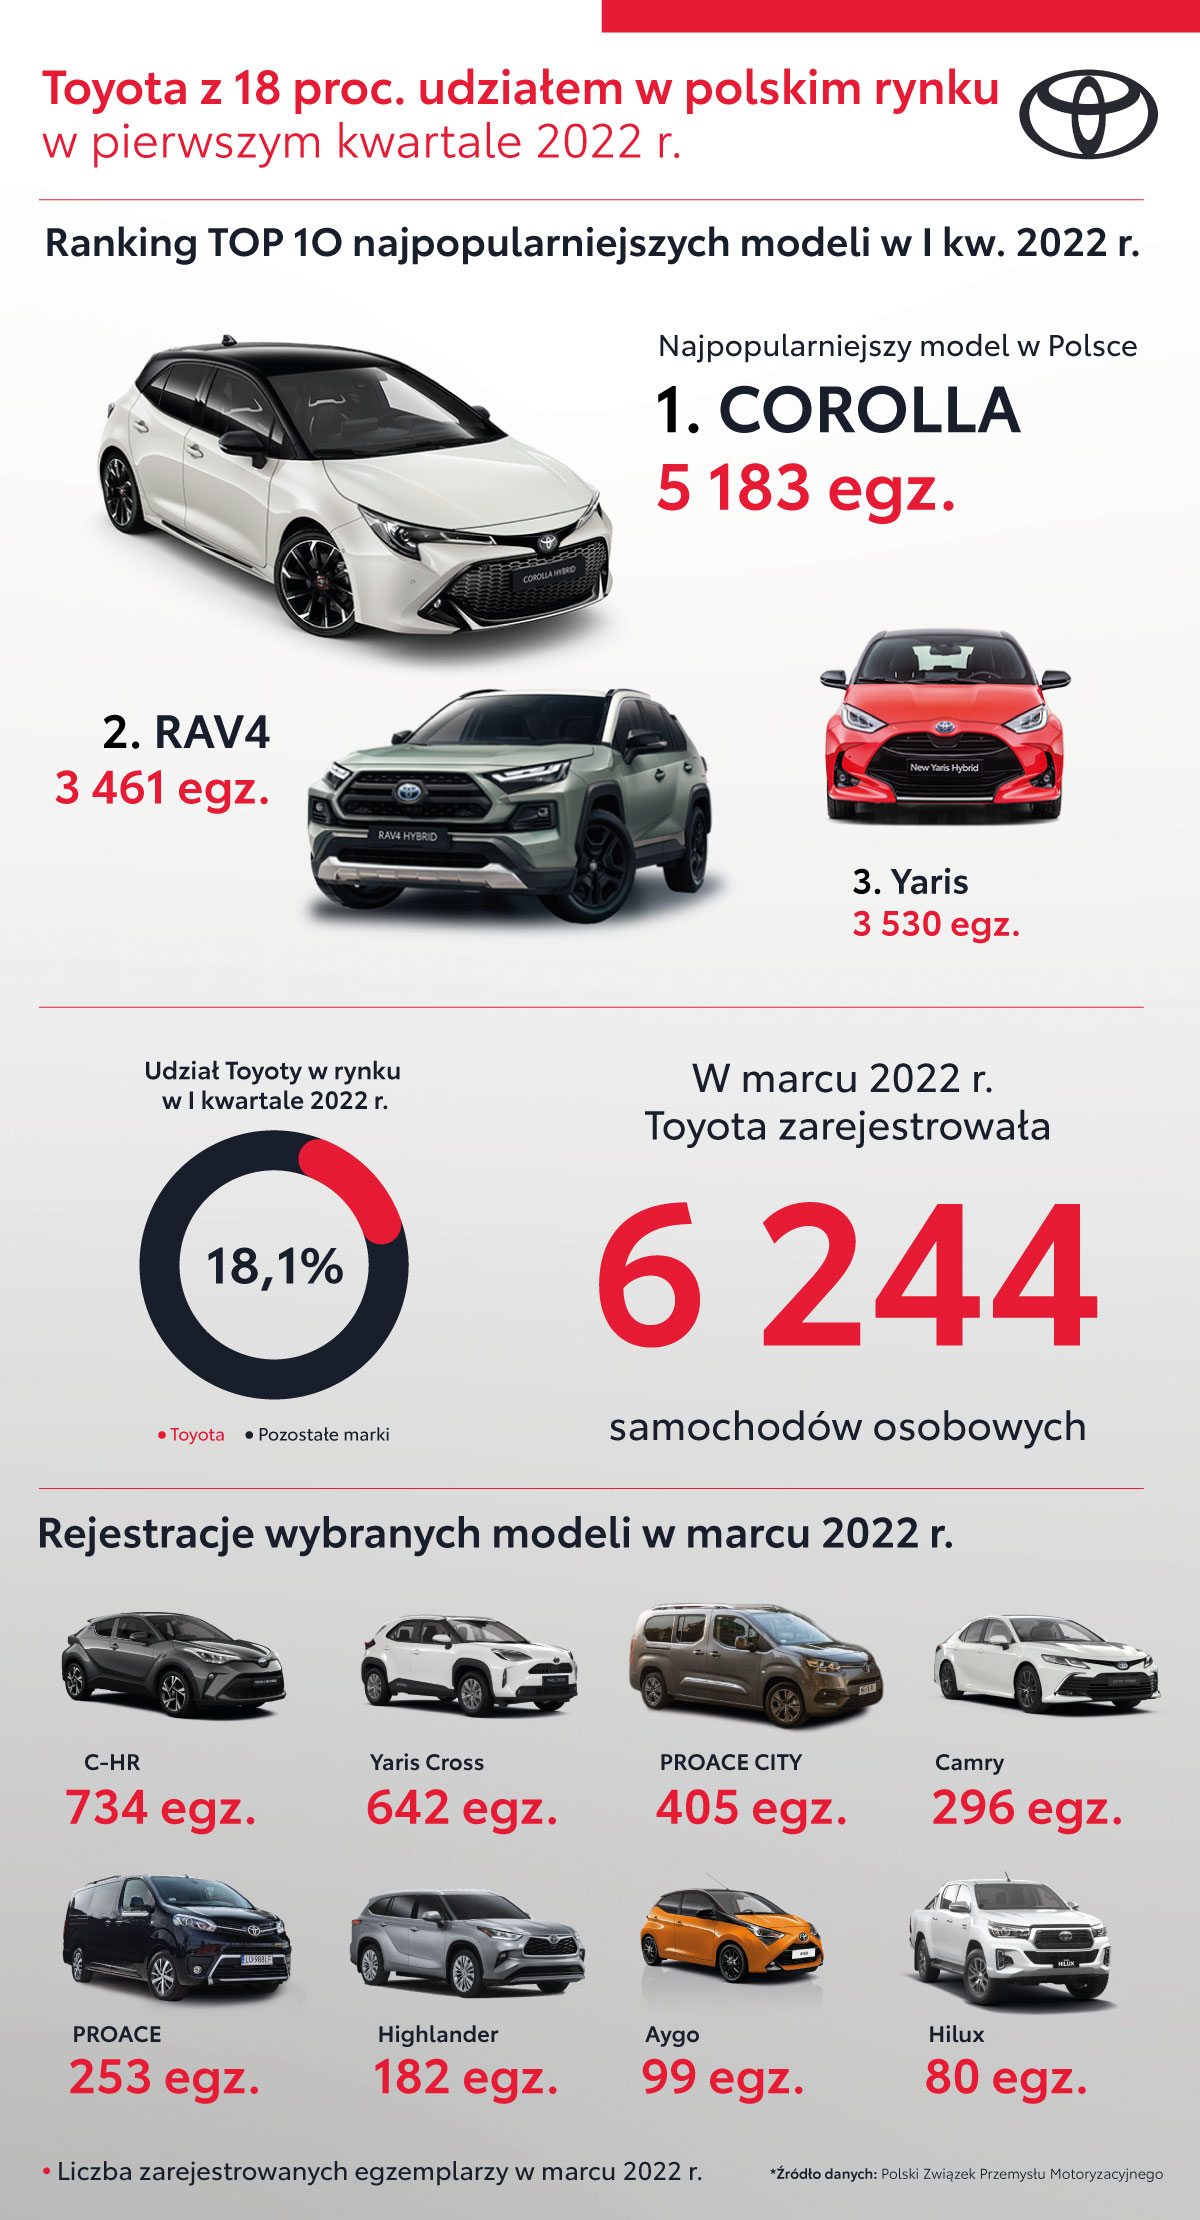 Niemal 18,5 tysiąca rejestracji samochodów osobowych Toyoty w pierwszym kwartale 2022 roku